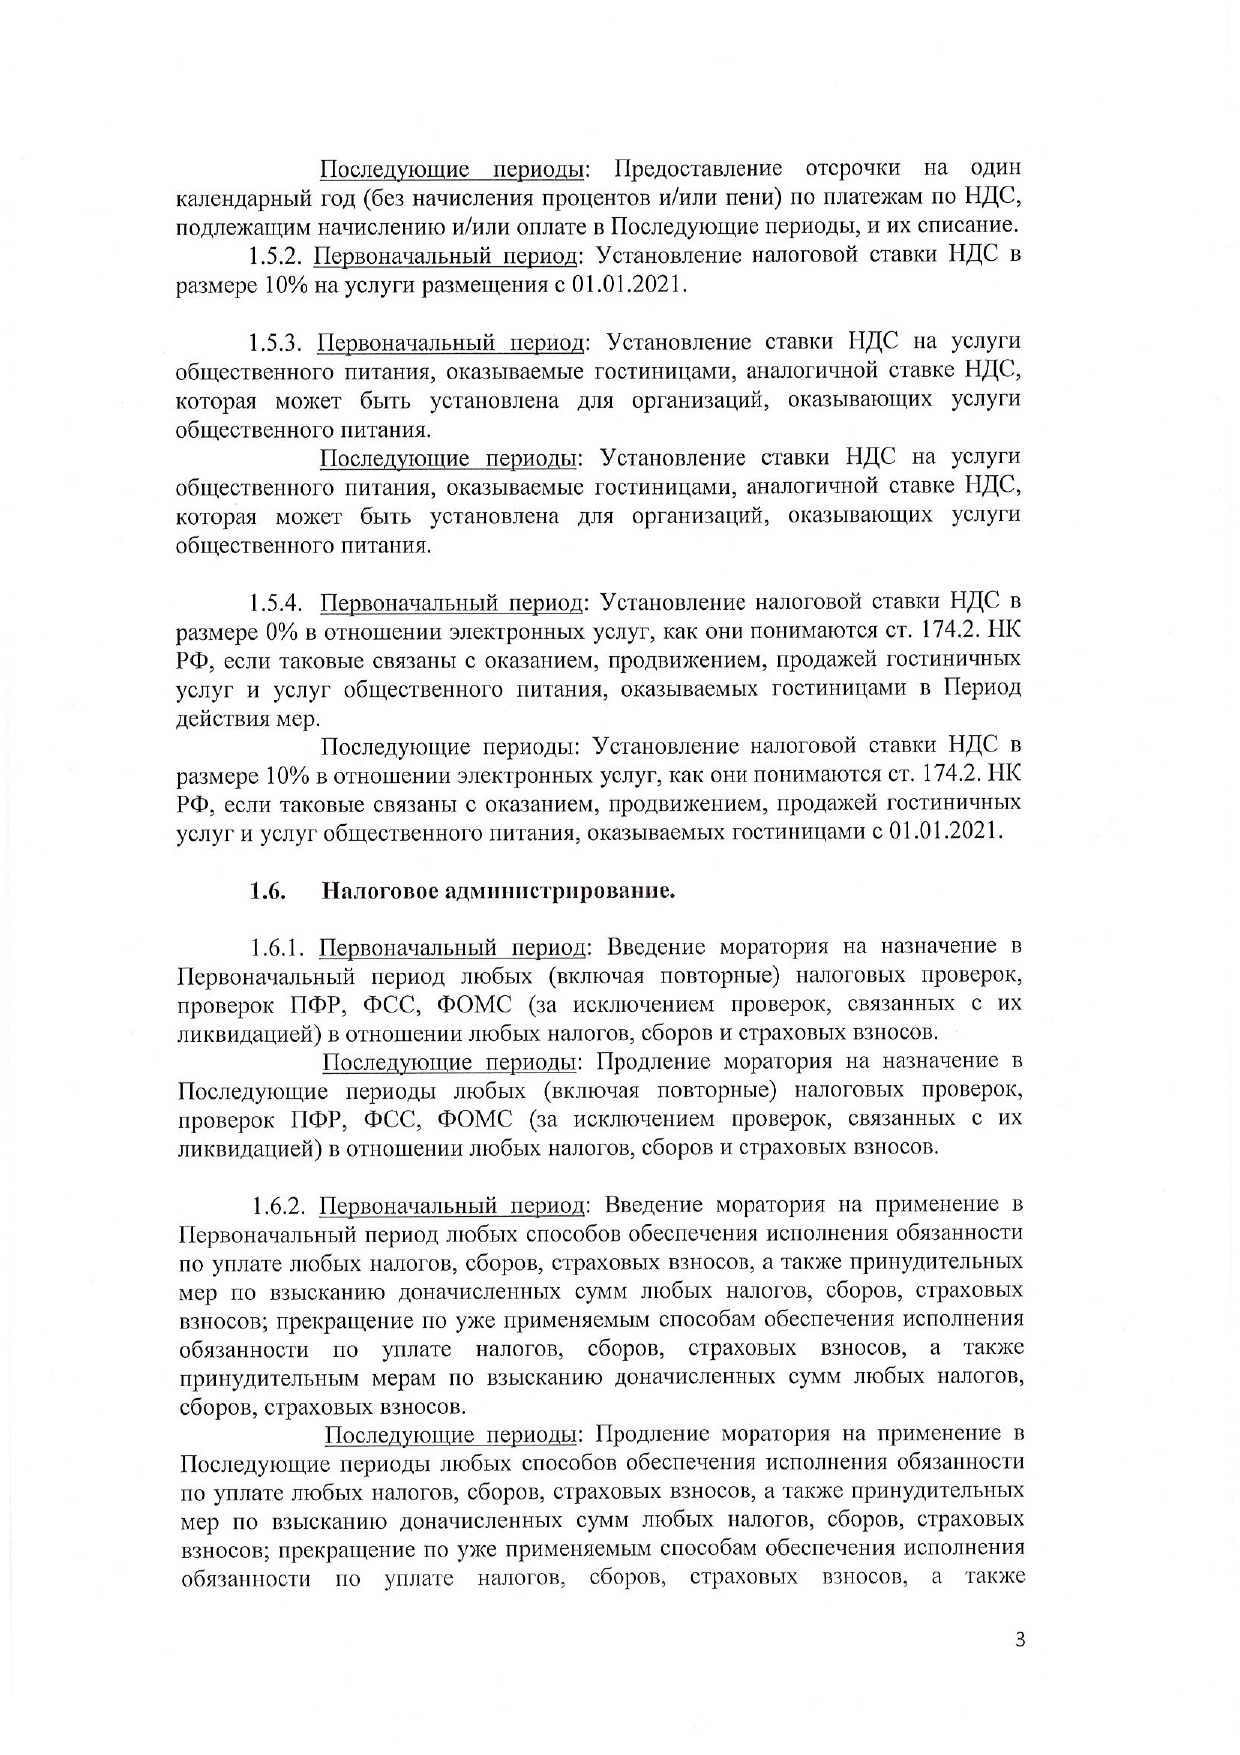 Письмо_Председателю_Правительства_РФ_2020_03_30_pdf_pdf_pdf_page-0006.jpg